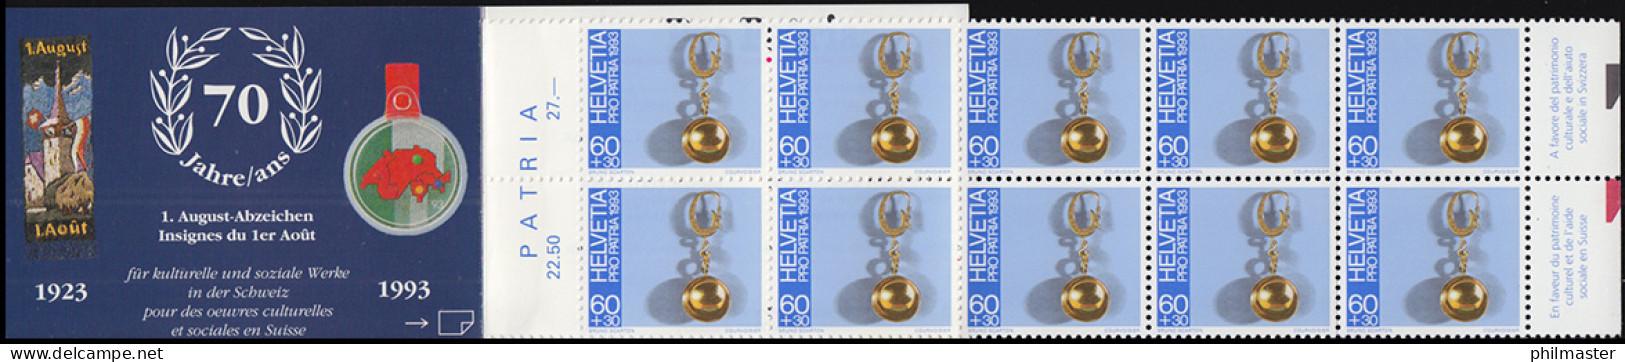 Schweiz Markenheftchen 0-95, Pro Patria Volkskunst 1993, ** - Booklets